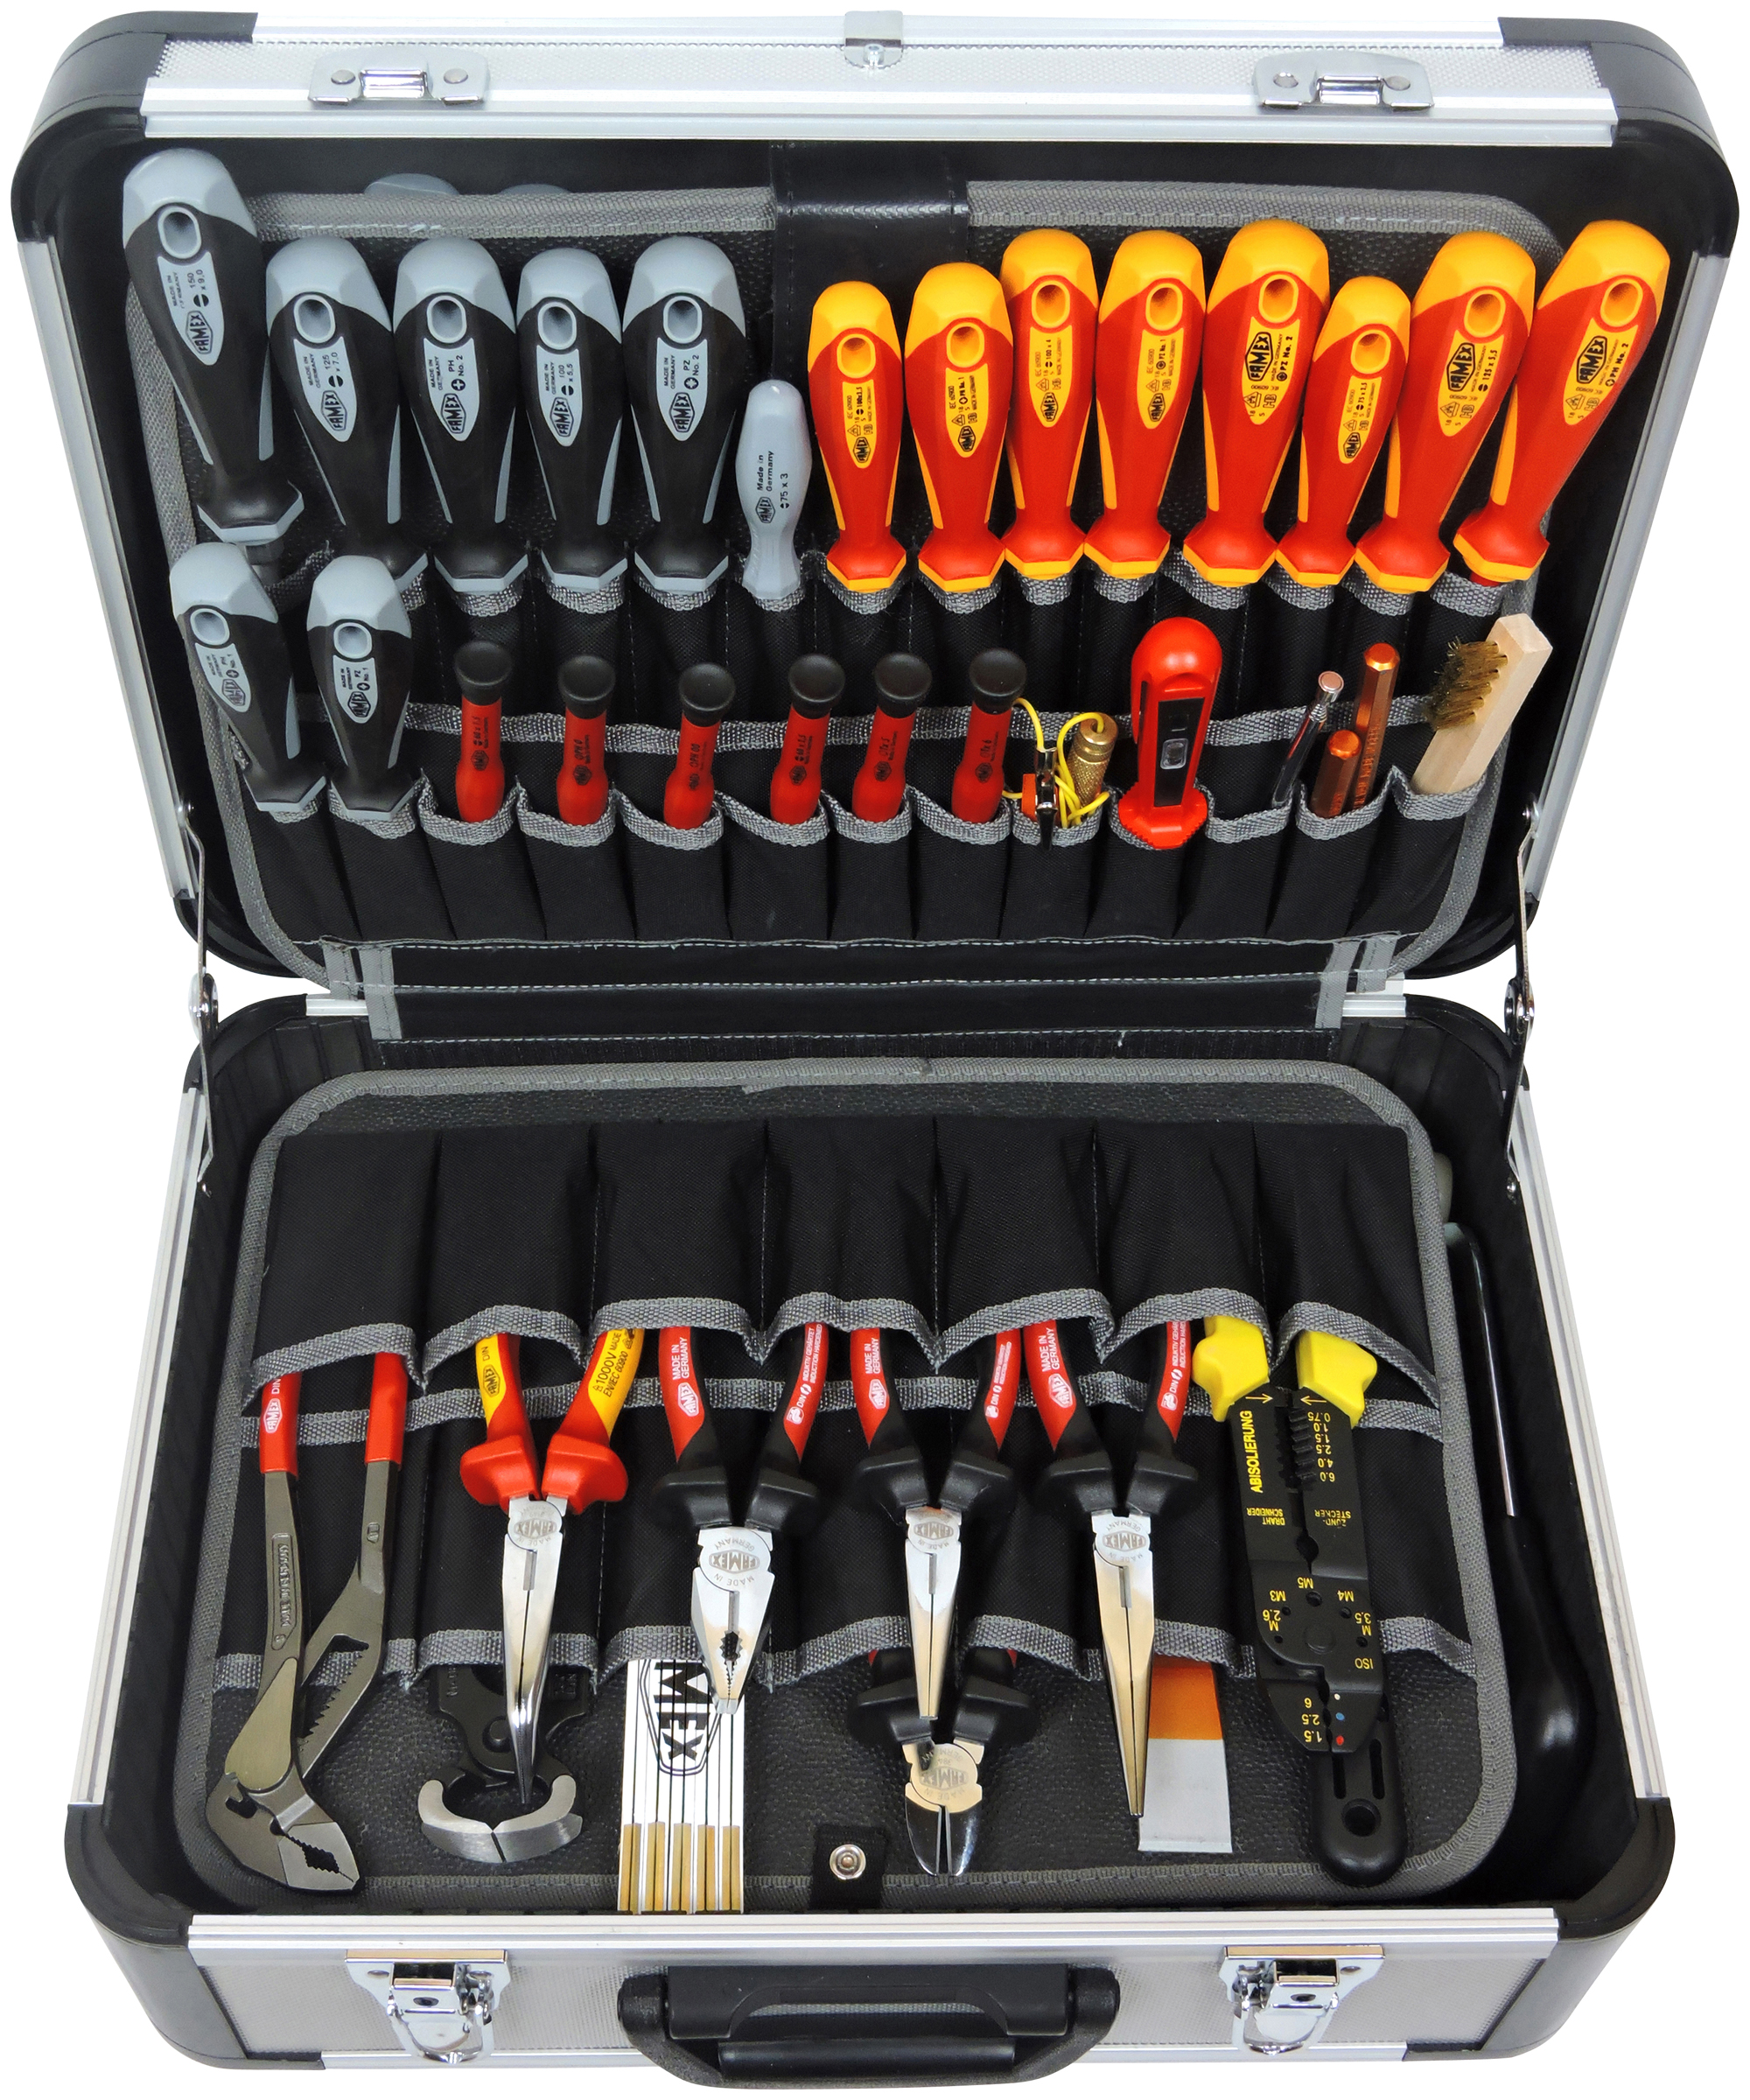 kaufen 414-79 Werkzeugkoffer online FAMEX High-End Werkzeuge günstig mit Werkzeugbestückung -